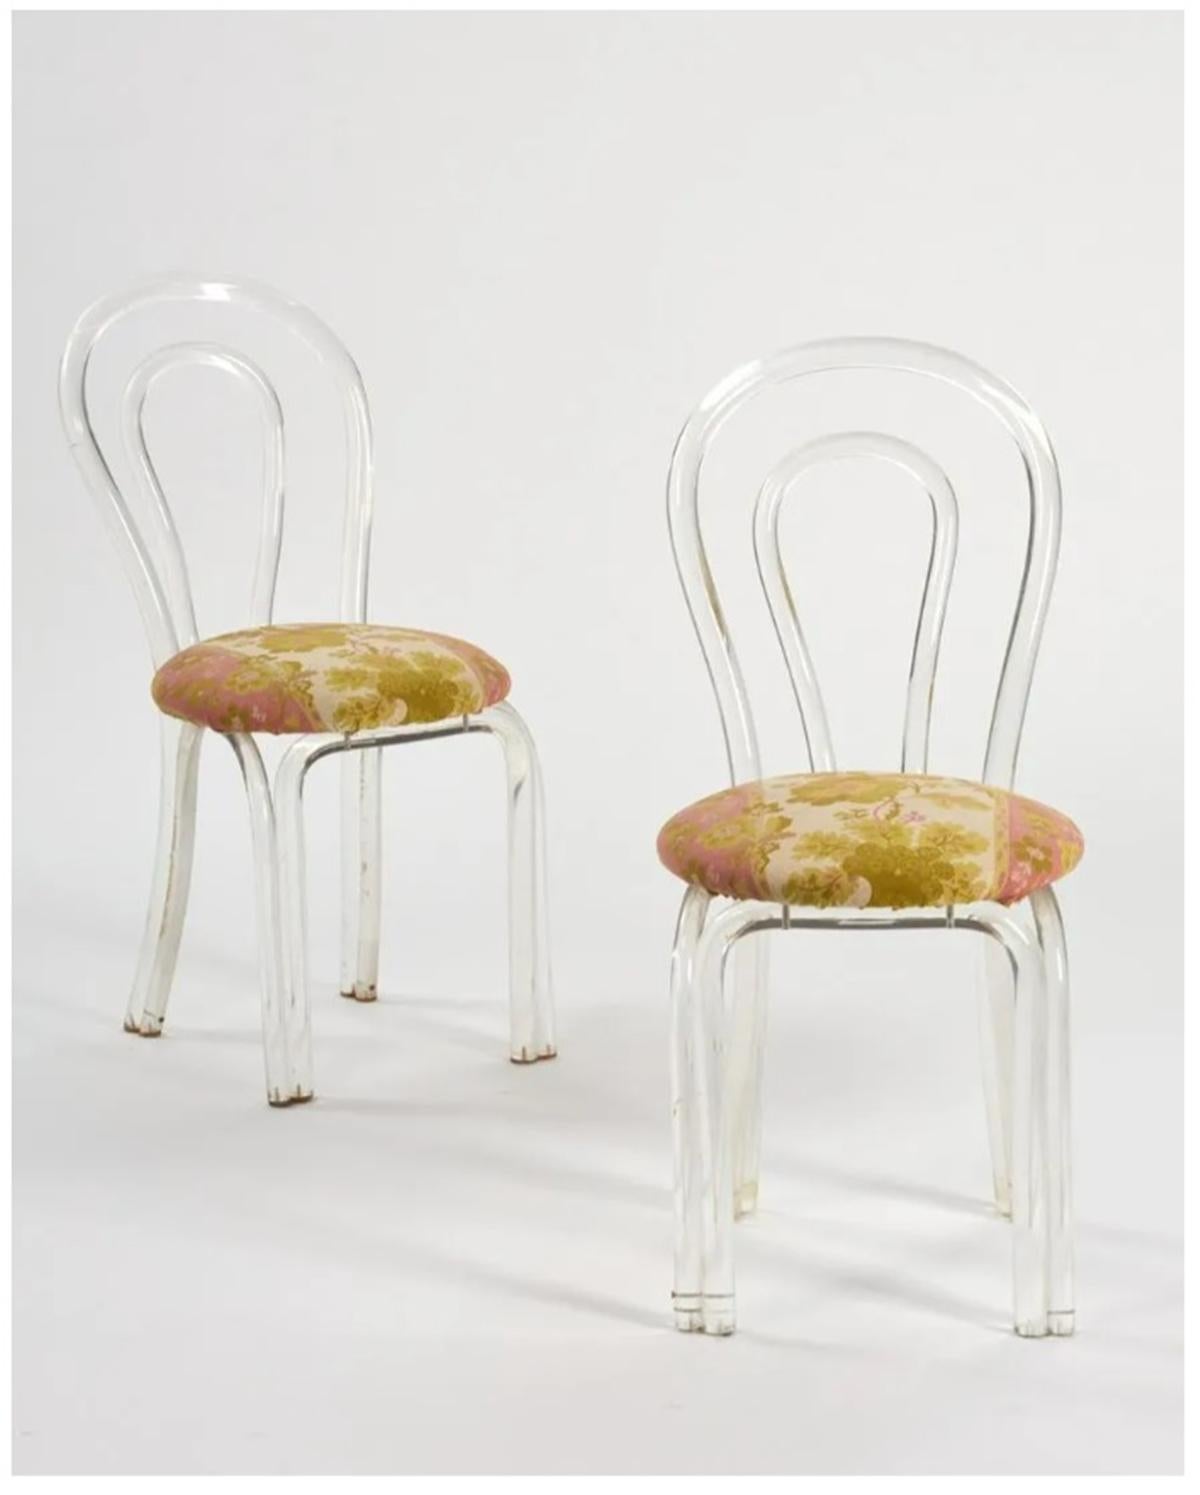 Schönes Paar von Lucite Seite oder Eitelkeit Stühle zugeschrieben Dorothy Thorpe.
Die Stühle bestehen aus massiven Lucite-Stäben, die so gebogen sind, dass die Rückenlehne und die Beine der Stühle eine schöne Form erhalten.

Die Stühle sind noch mit